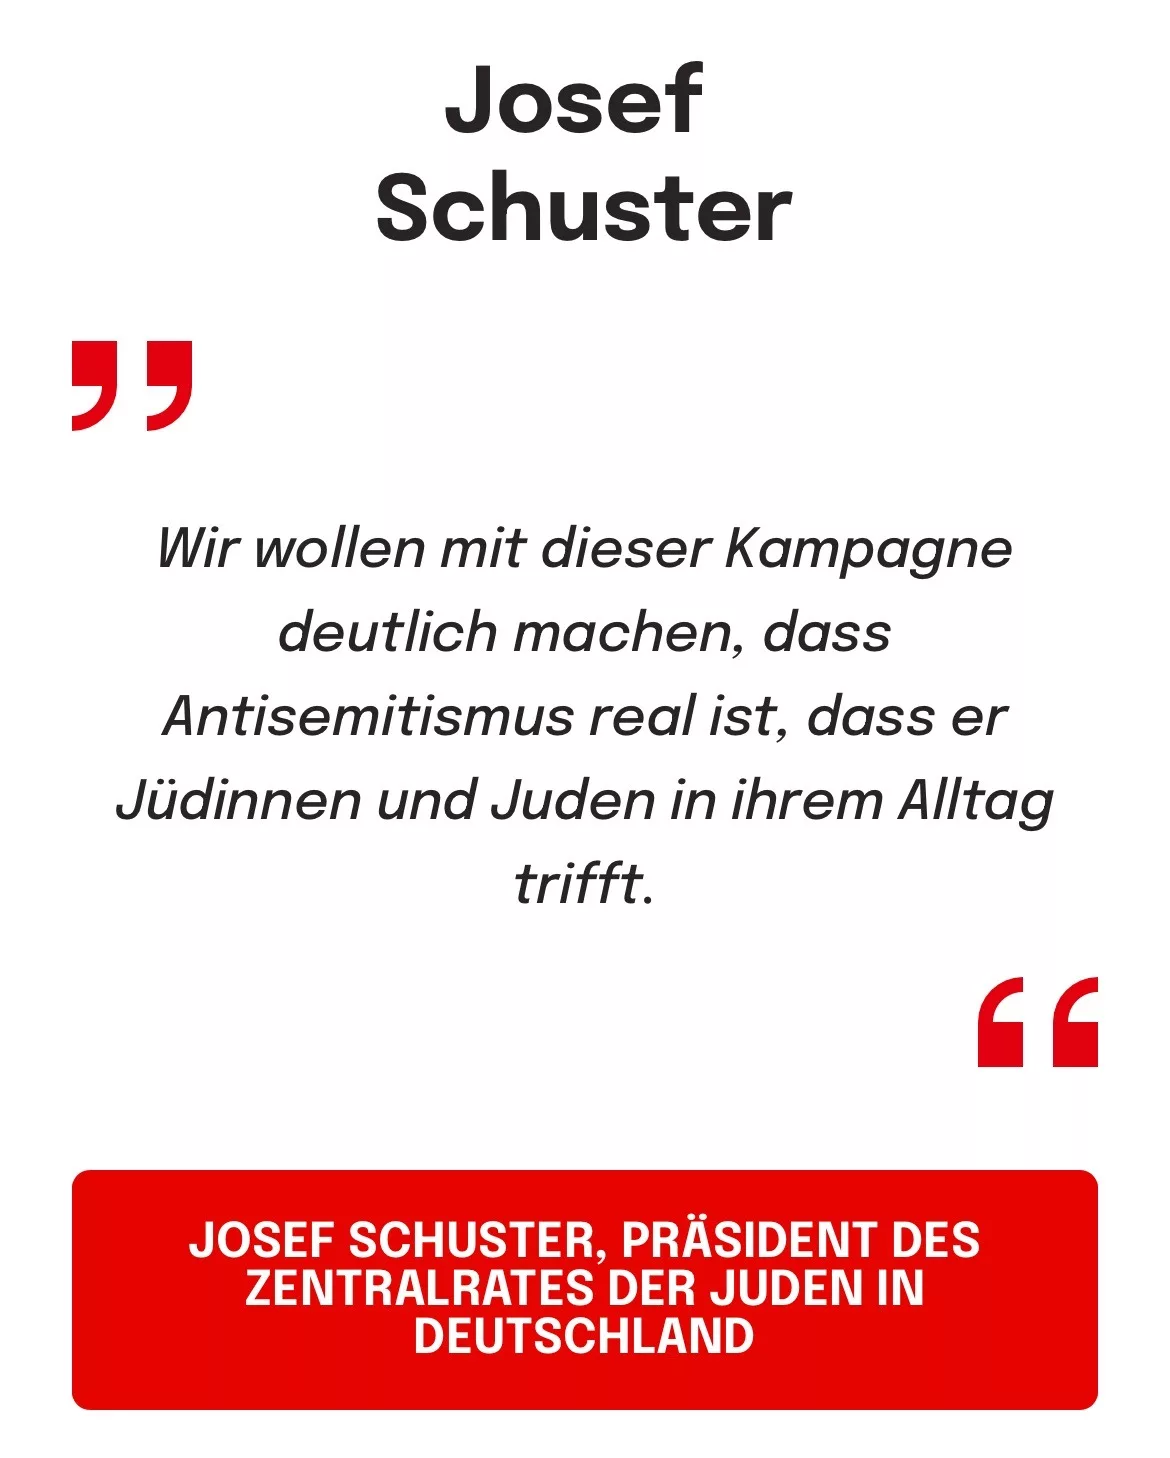 JOSENTRALRATES DER SUDEN RES
DEUTSCHLAND: Wir wollen mit dieser Kampagne deutlich machen, dass Antisemitismus real ist, dass er Jüdinnen und Juden in ihrem Alltag trifft.